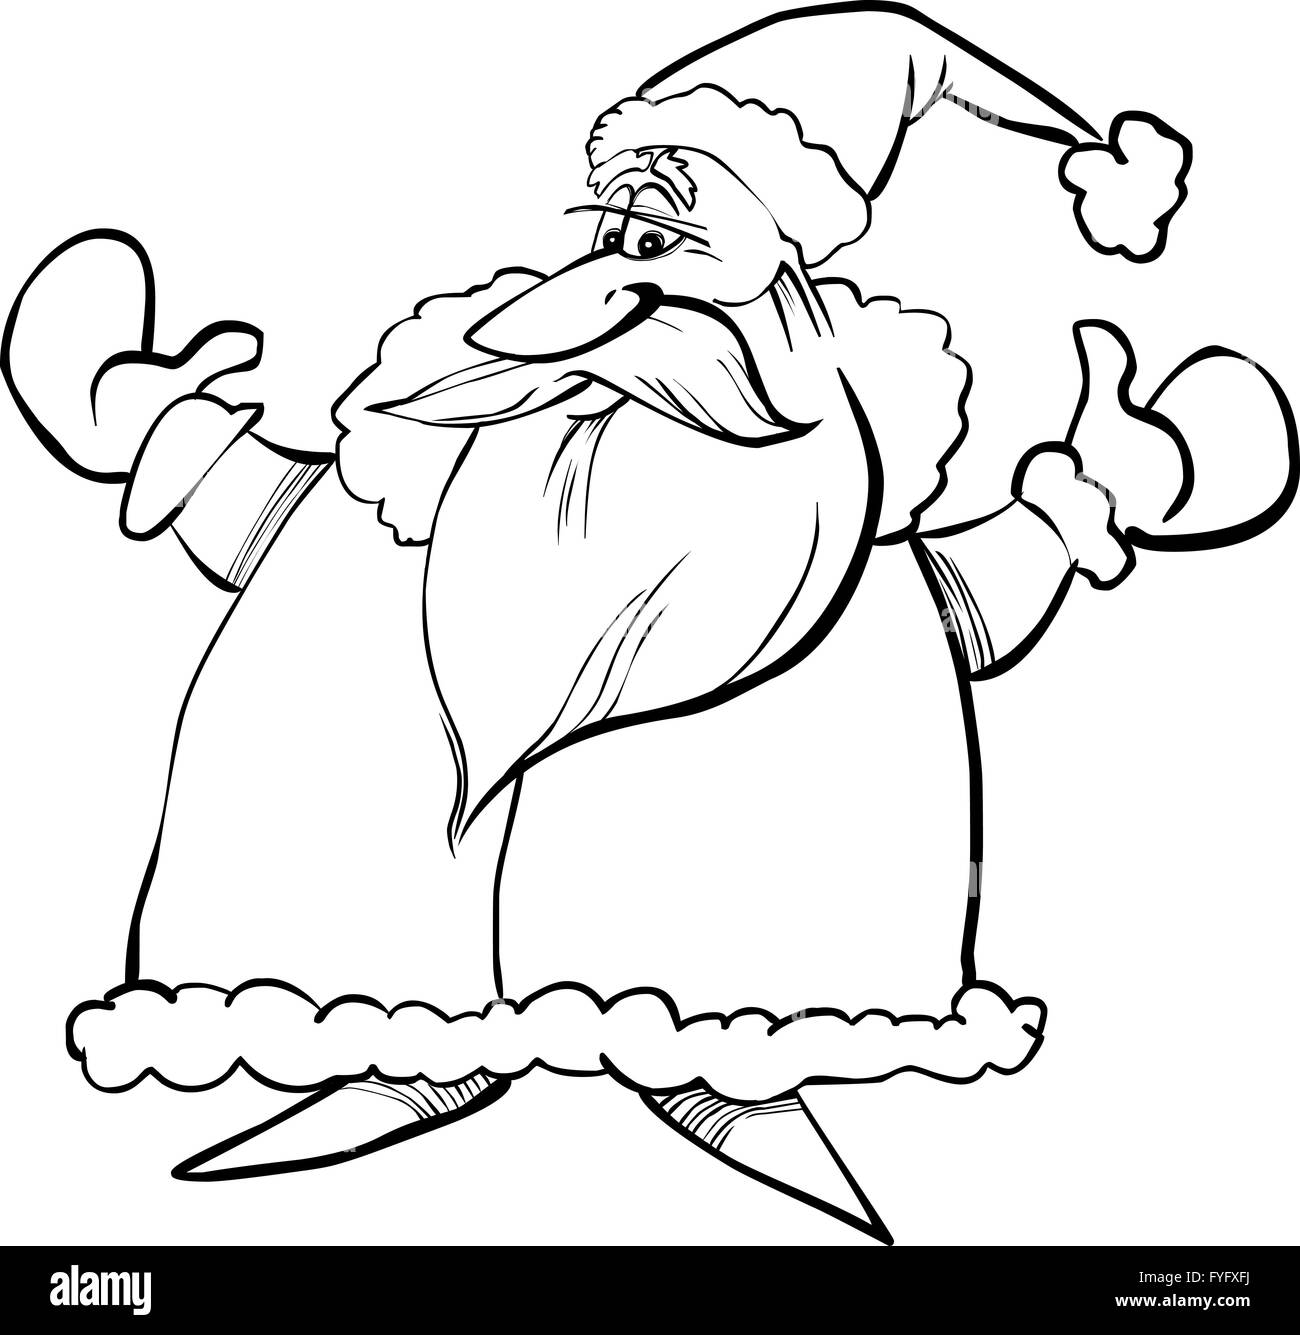 cartoon santa claus for coloring book Stock Photo